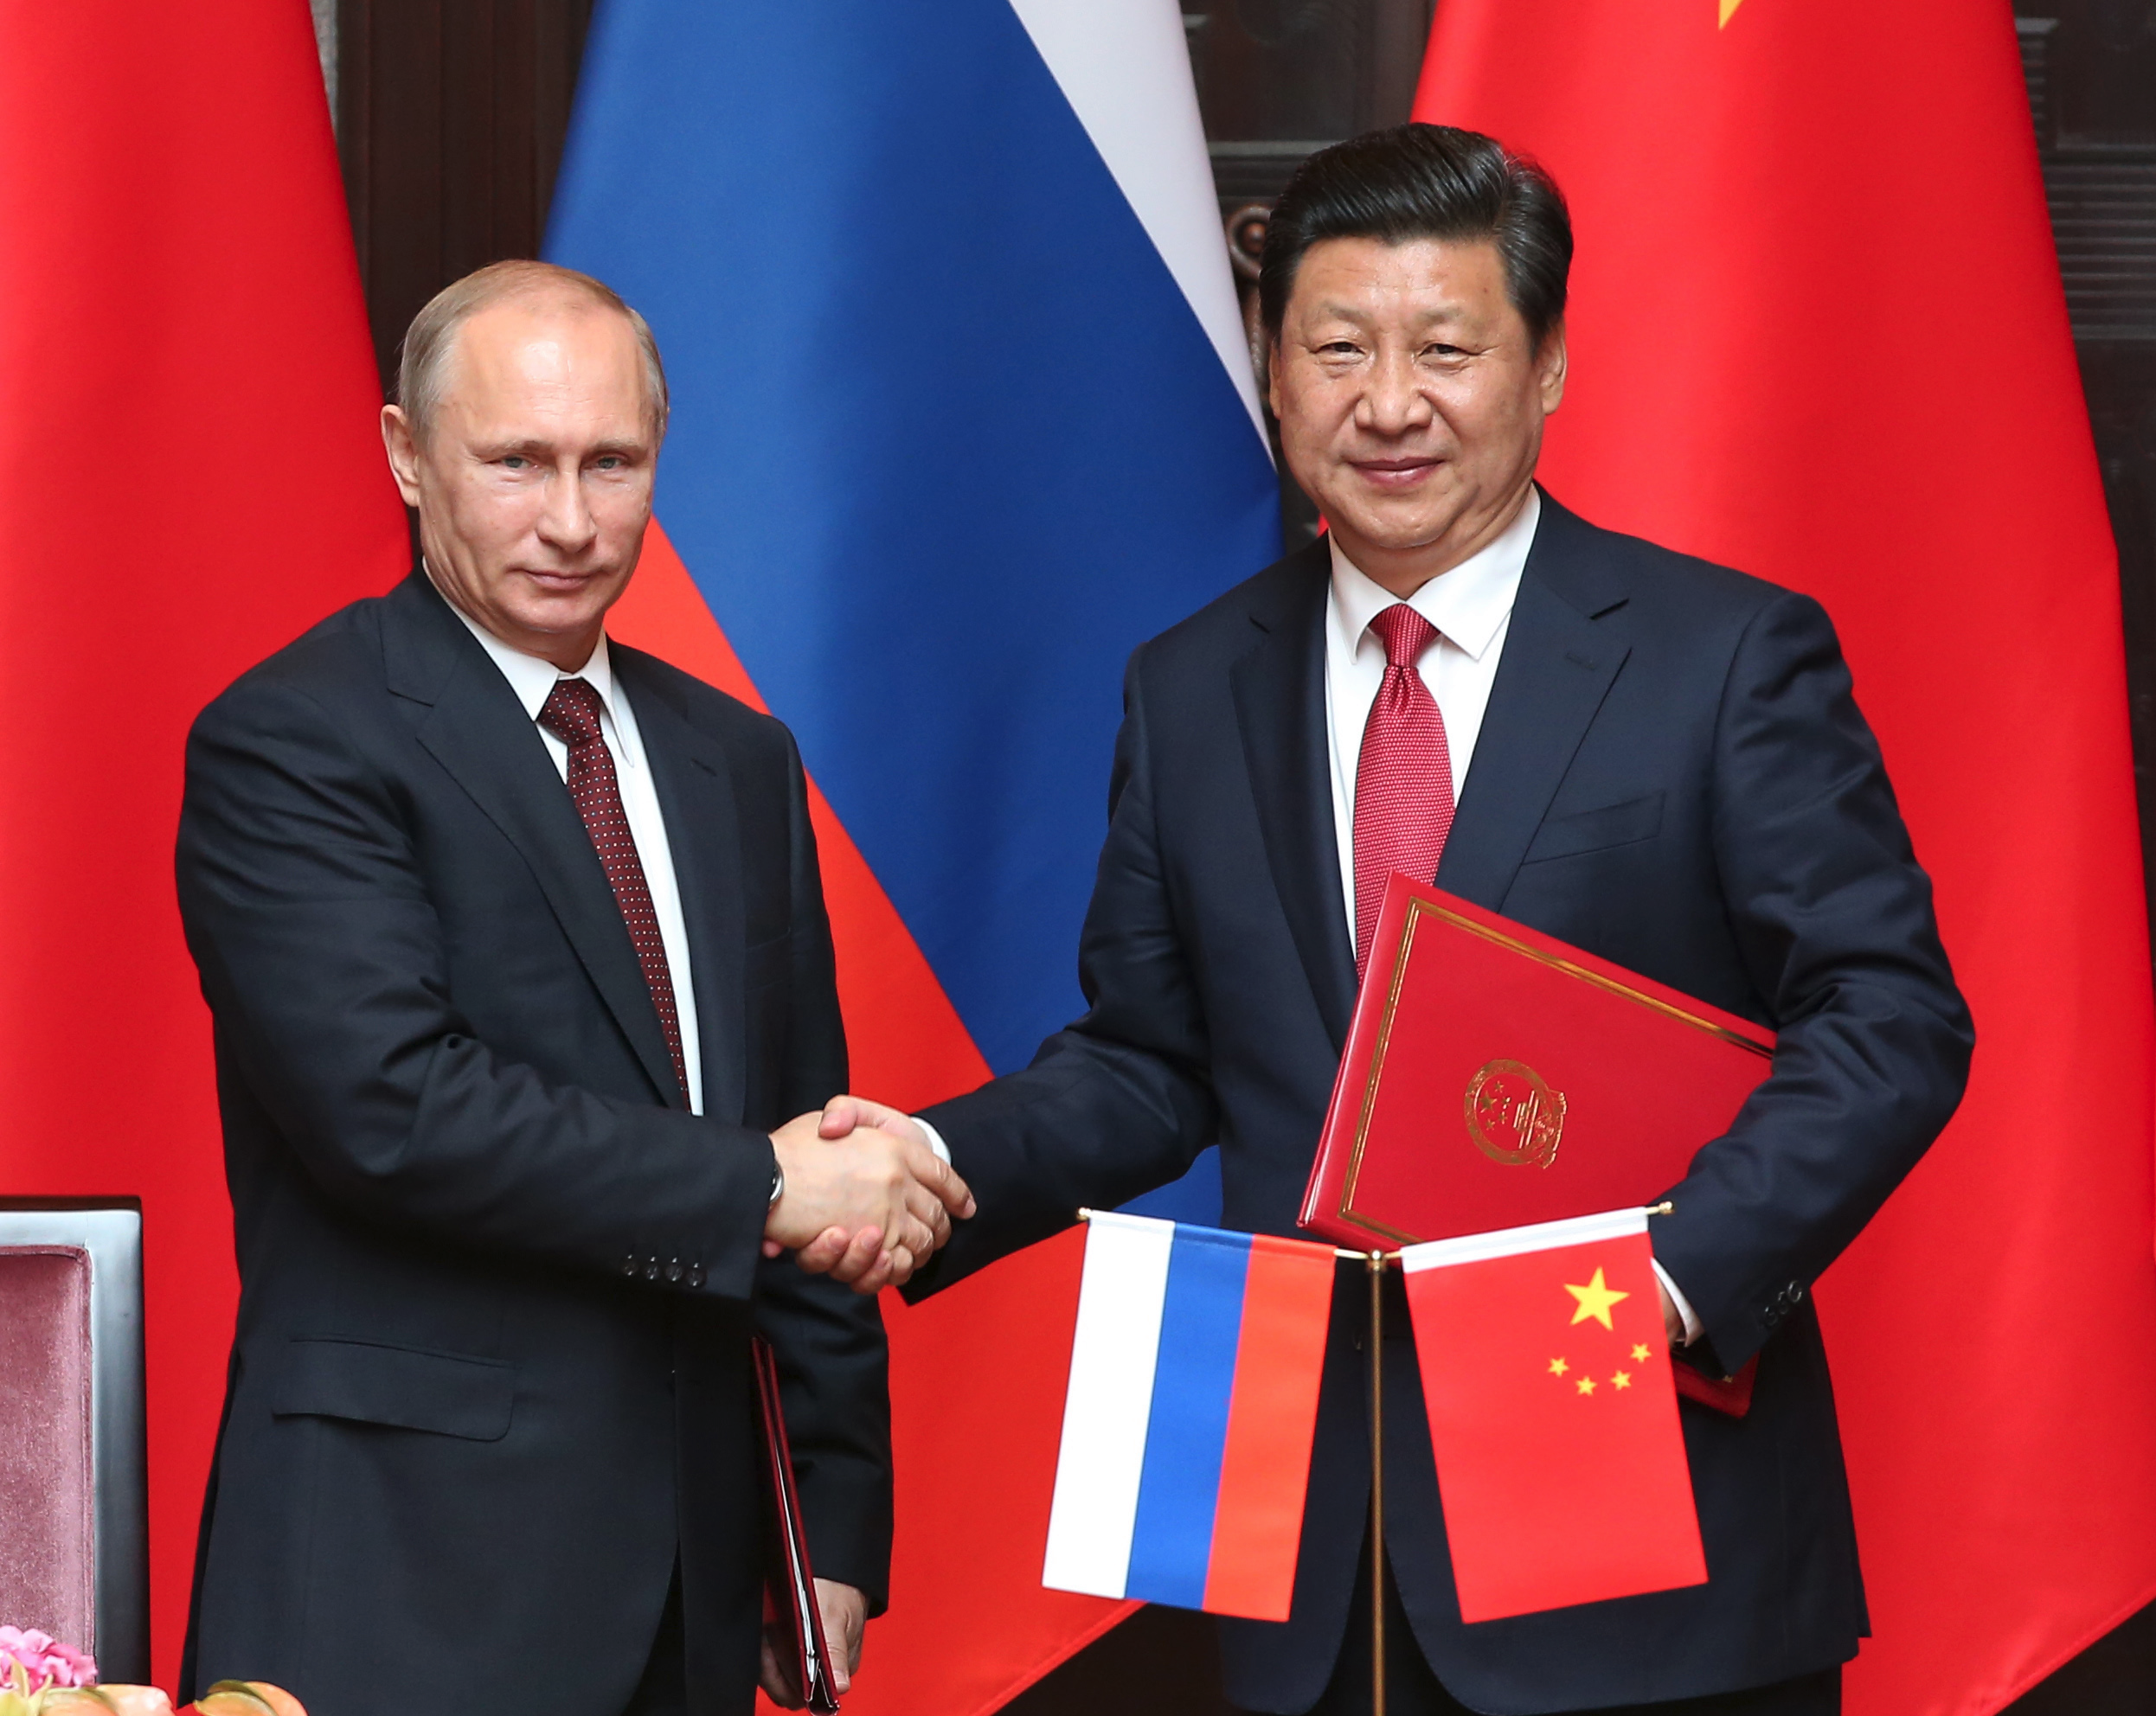 Байден подталкивает Россию и Китай ближе друг к другу?